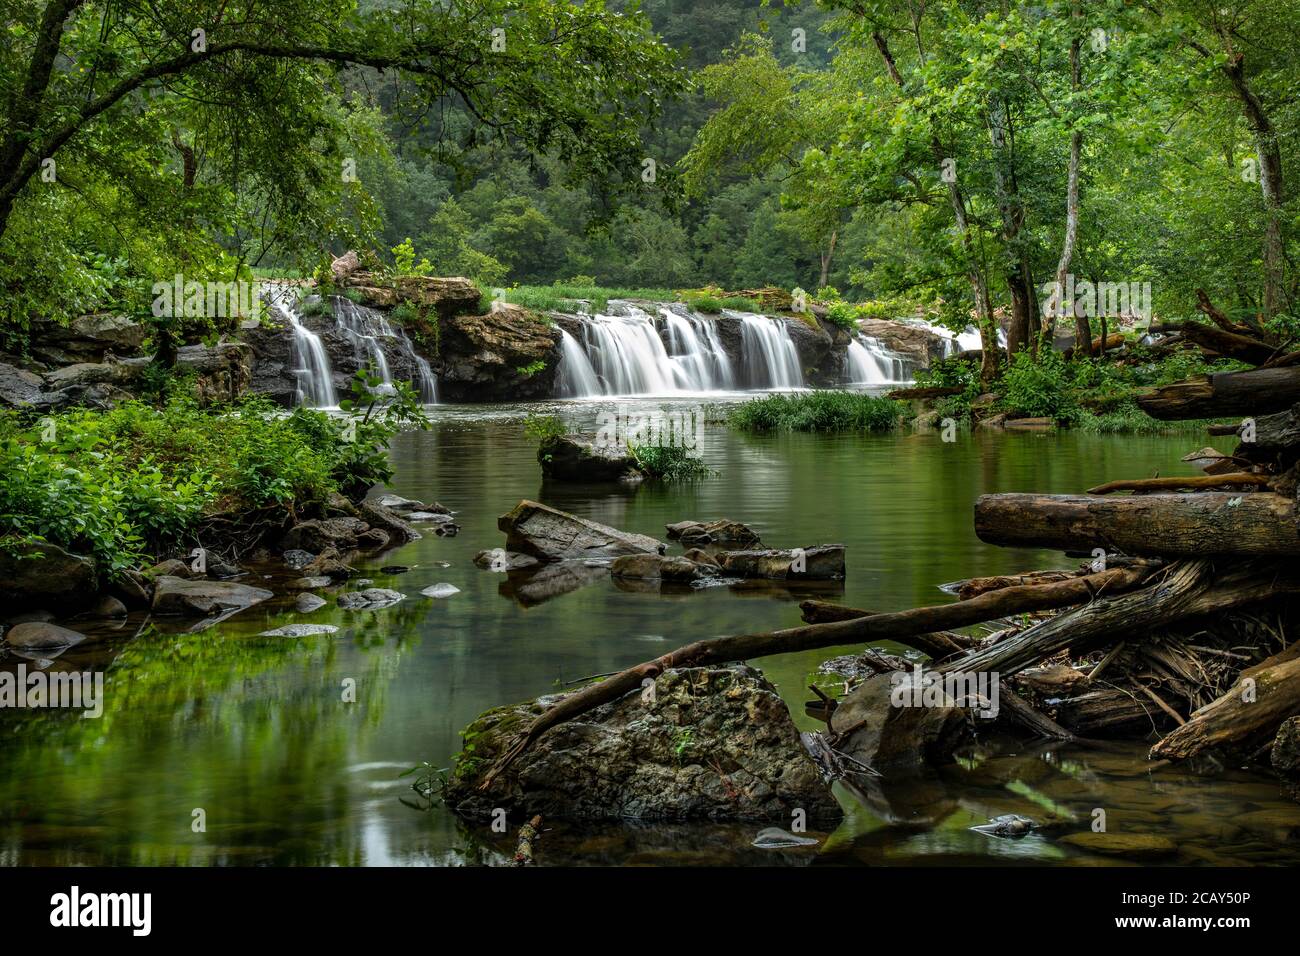 Aguas fluidas Sandstone Falls en el New River, West Virginia, Estados Unidos Foto de stock